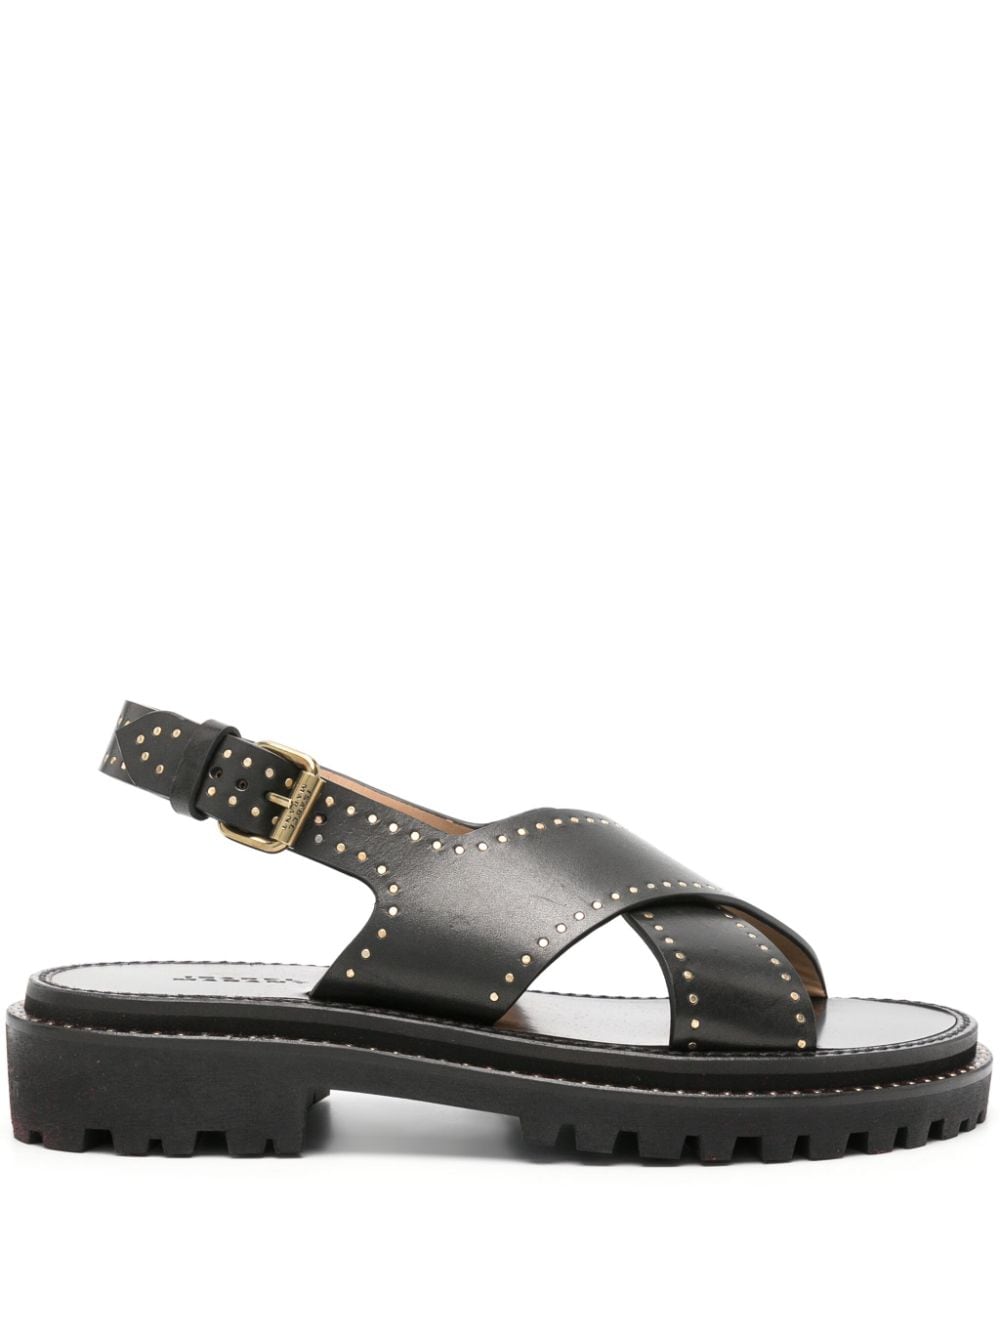 ISABEL MARANT stud-embellished leather sandals - Black von ISABEL MARANT